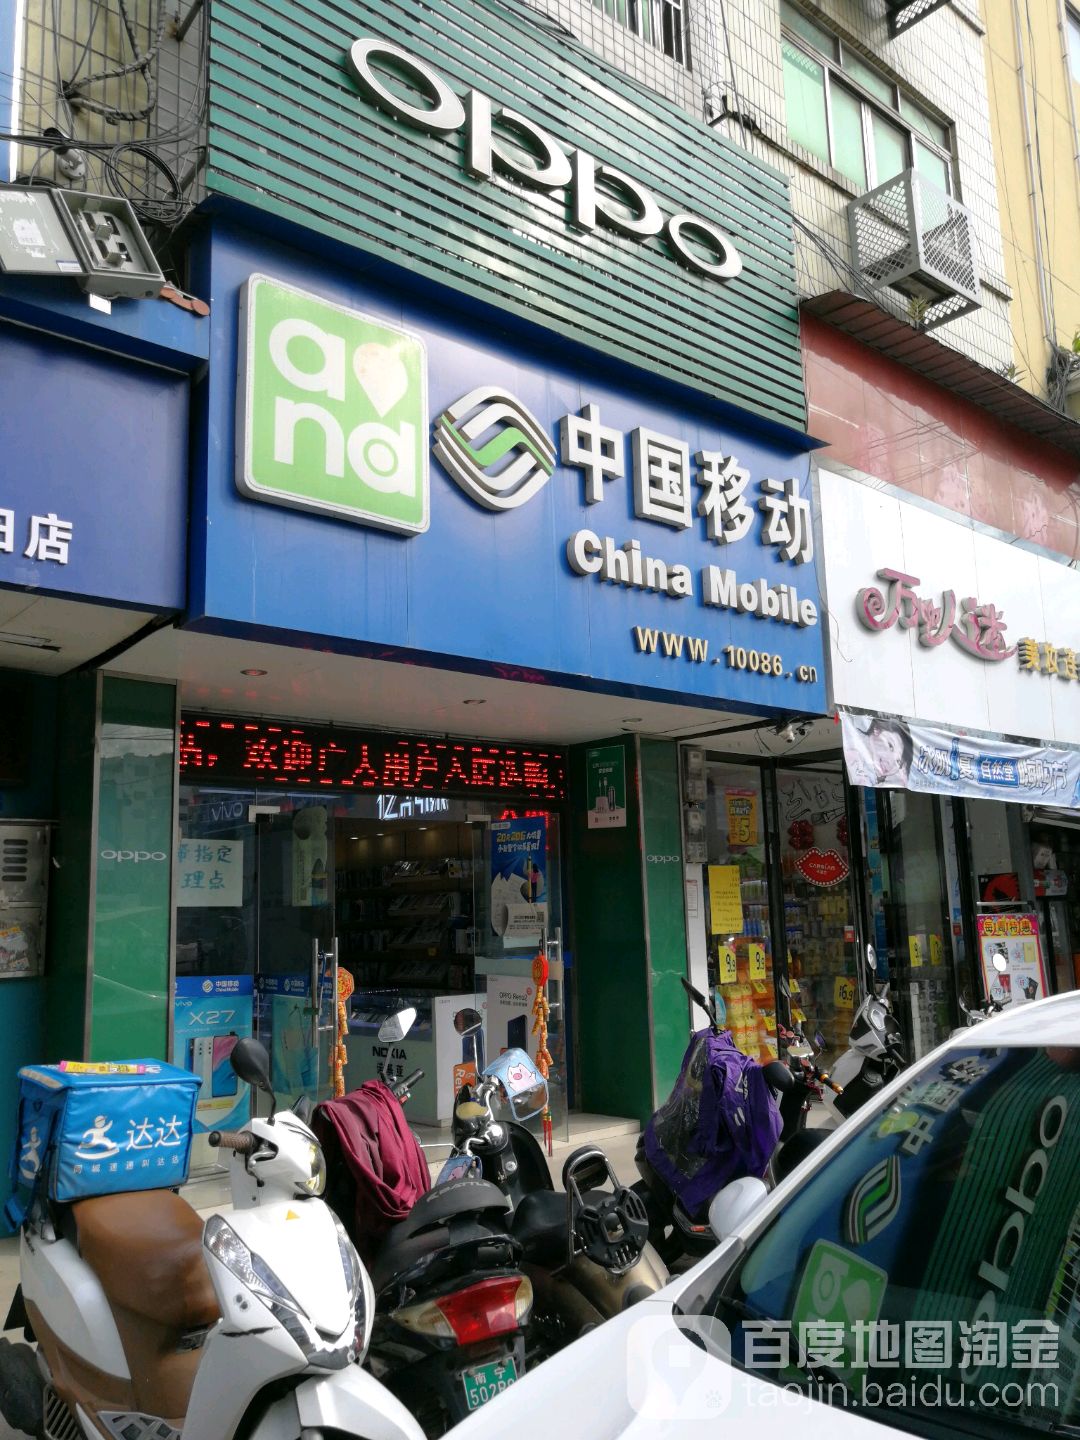 中國移動通信(銀海大道金和智能手機專營店)